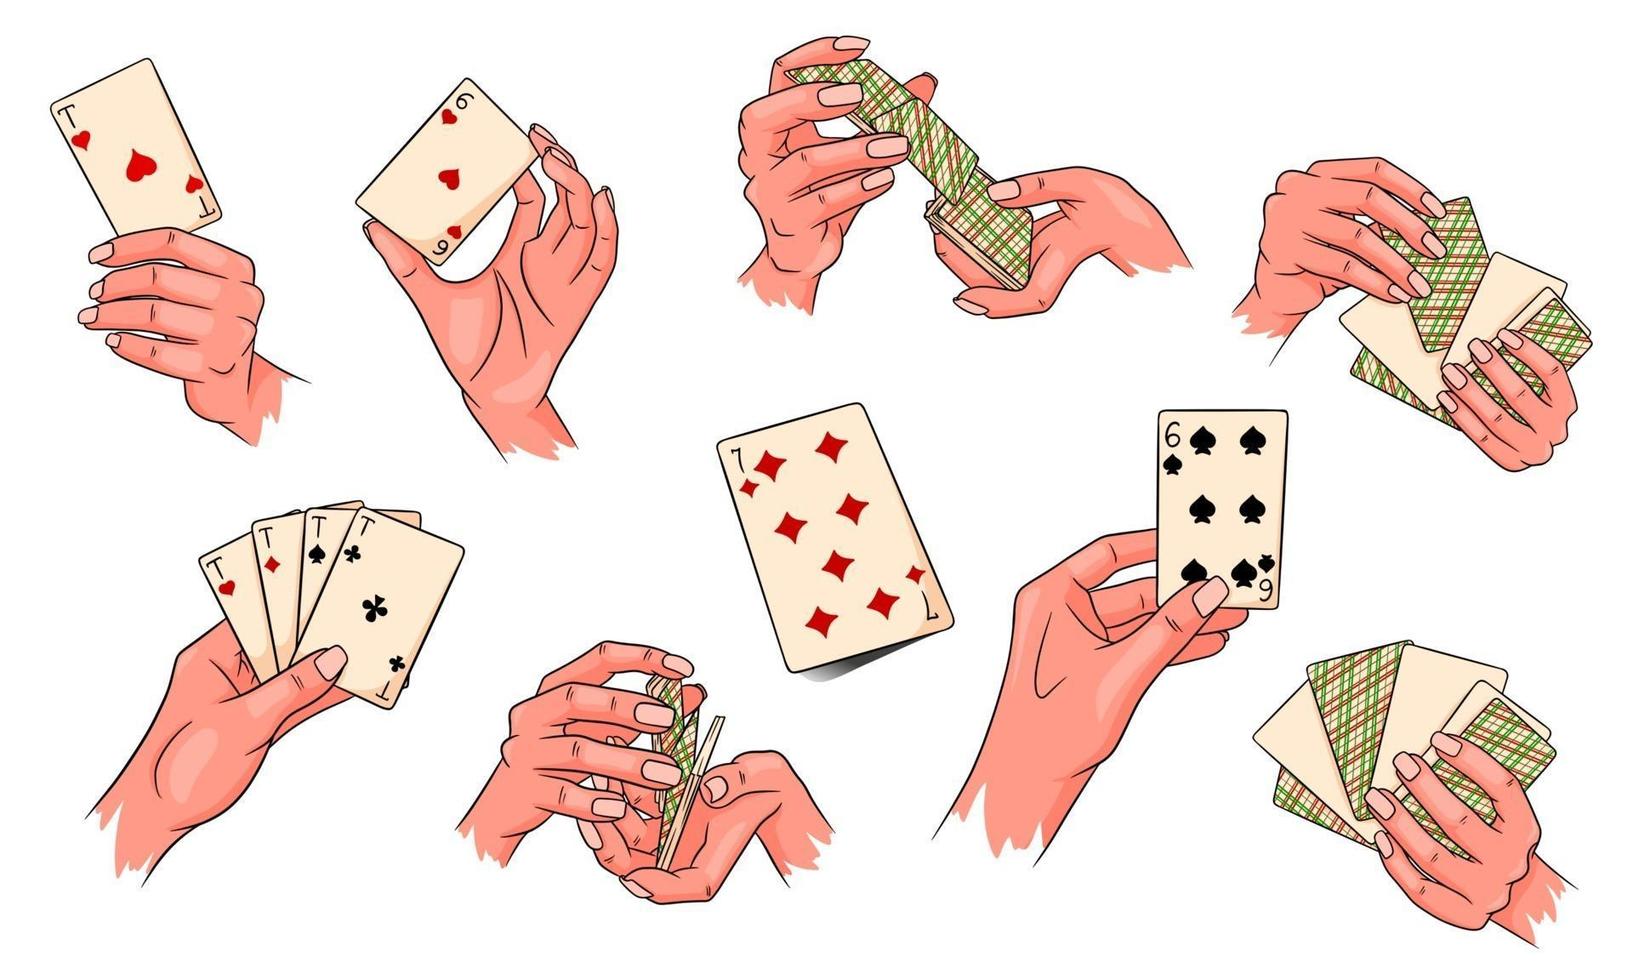 gioco d'azzardo. carte da gioco in mano. casinò, fortuna, fortuna. grande insieme. stile cartone animato. vettore